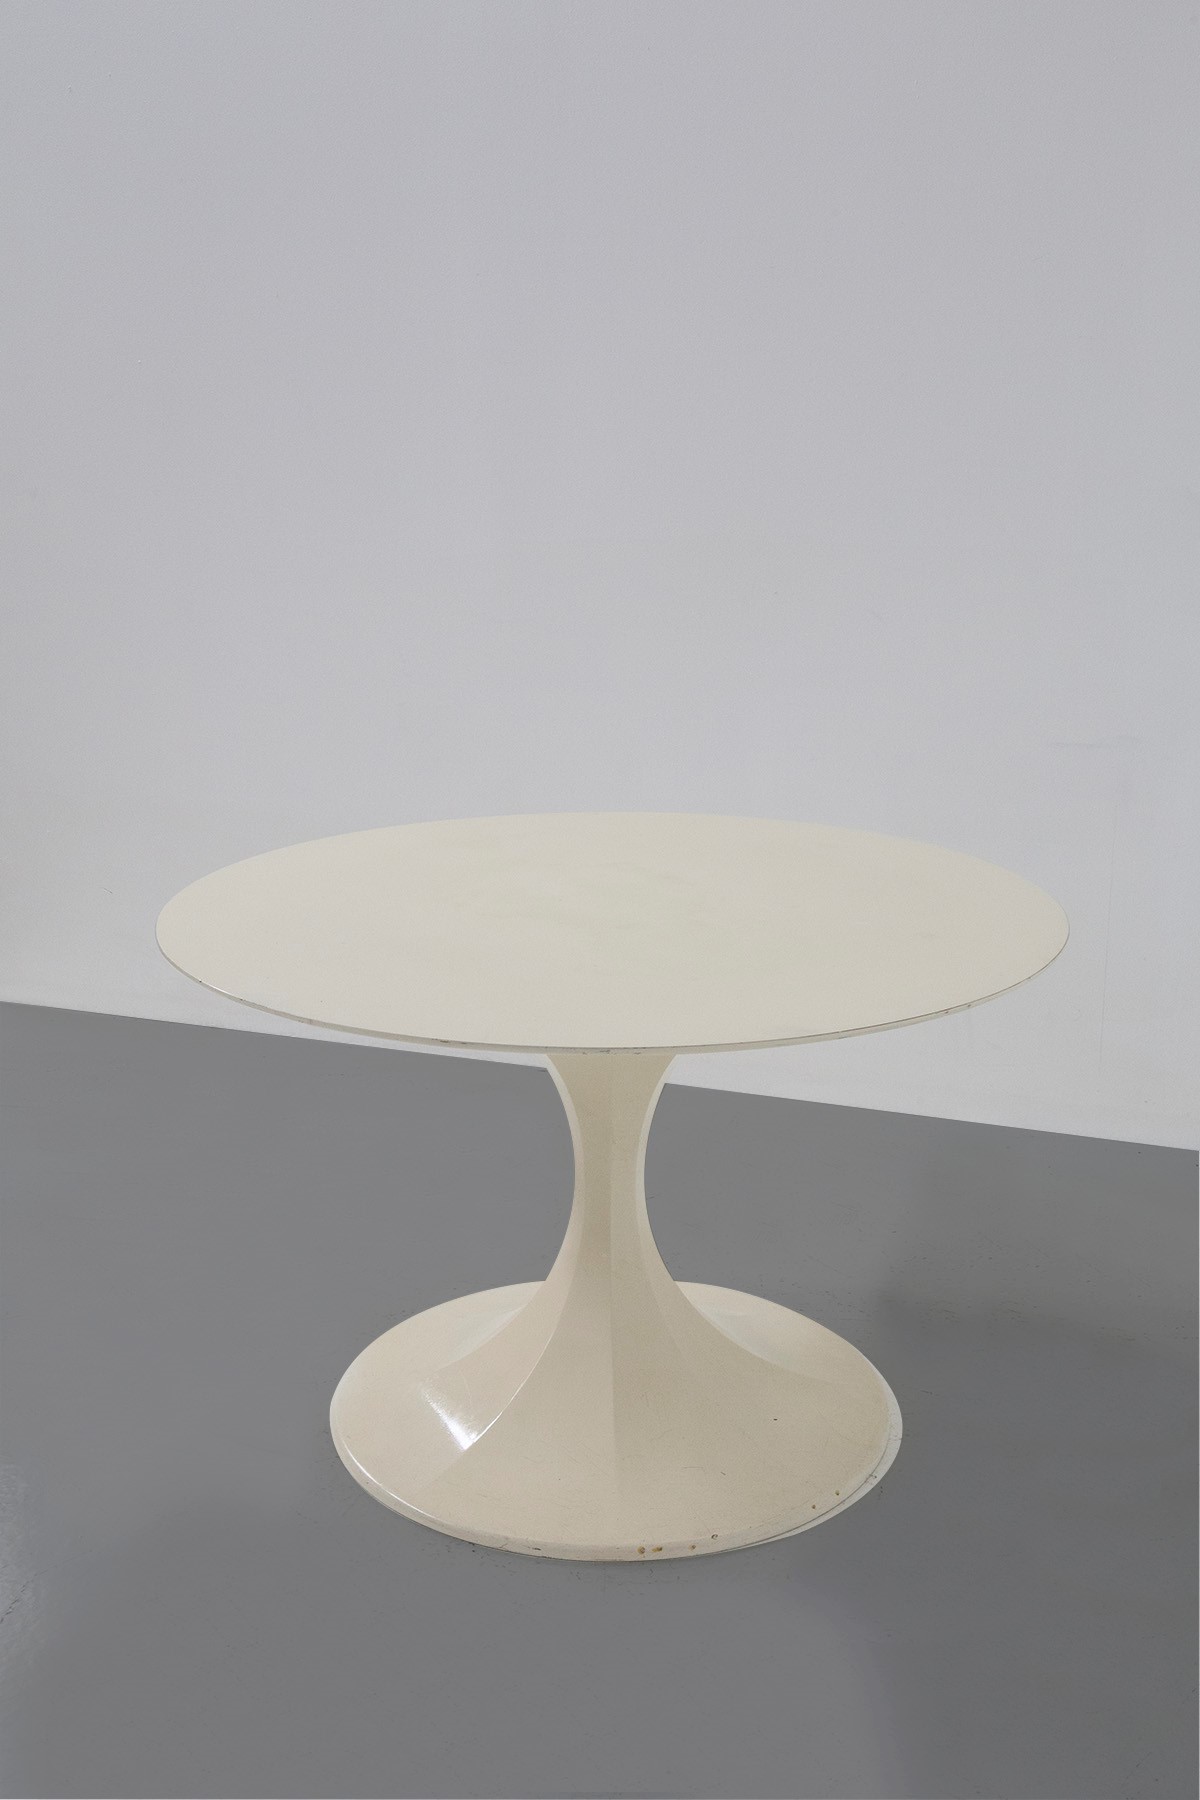 Tavolo circolare bianco in resina e legno, manifattura italiana   - Legno e resina  - Asta MASTERPIECES & UNIQUE FINDS - LTWID Auction House